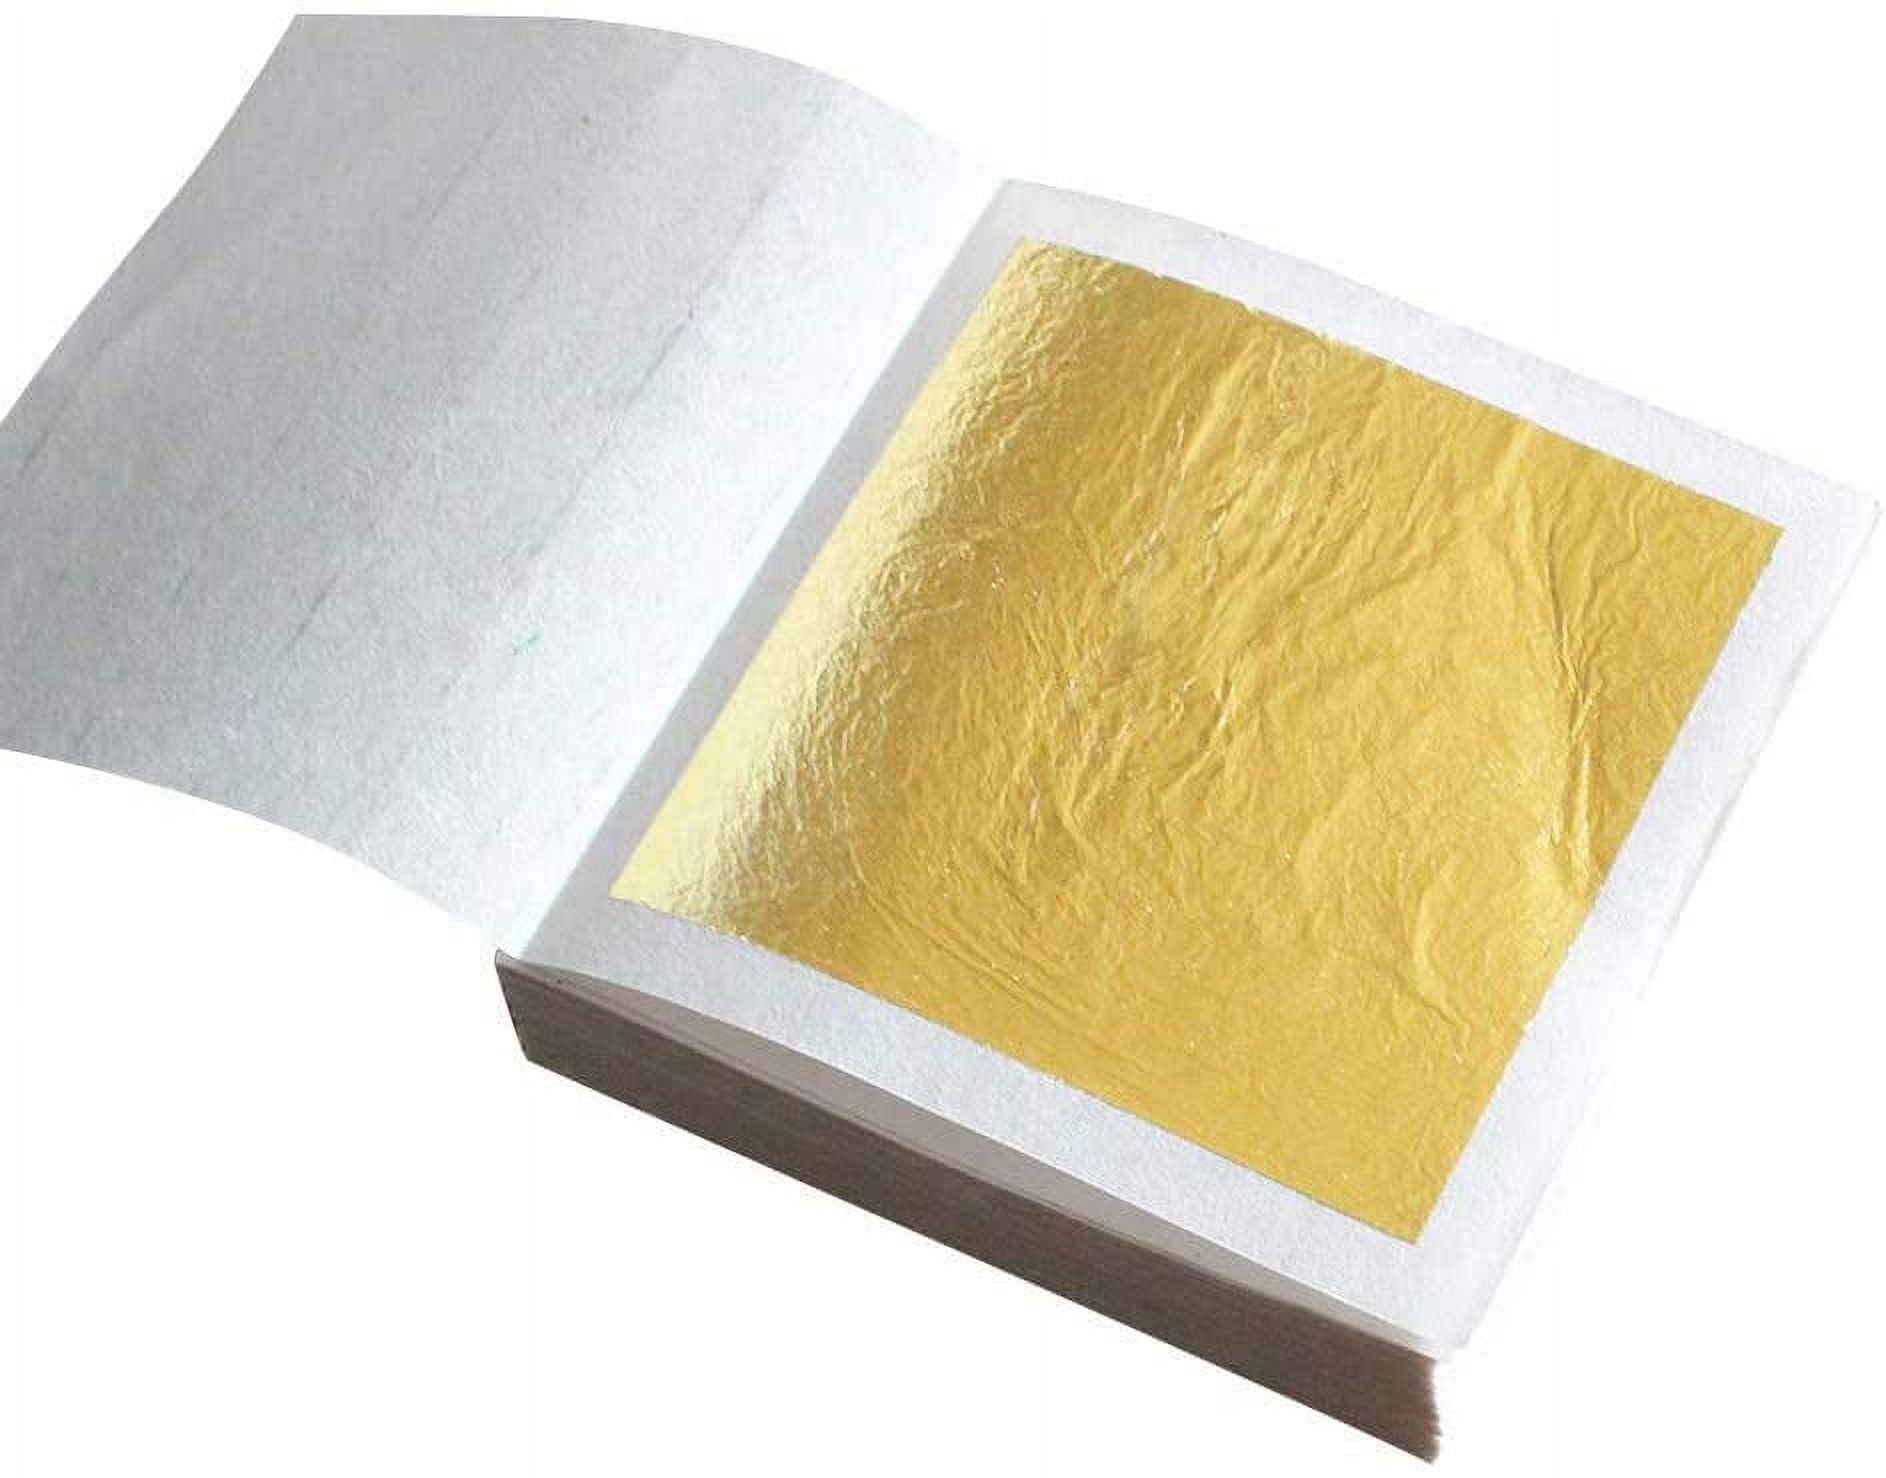  Genuine Gold Leaf Kit for Gilding (18k) : Arts, Crafts & Sewing